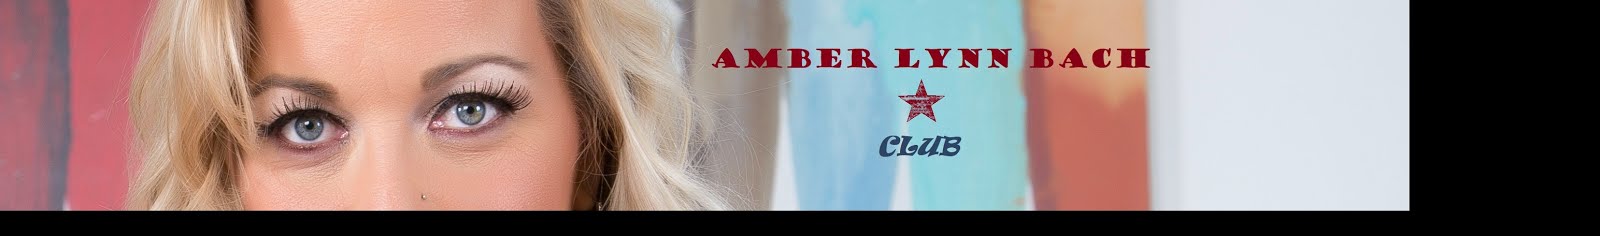 Amber Lynn Bach fanclub database